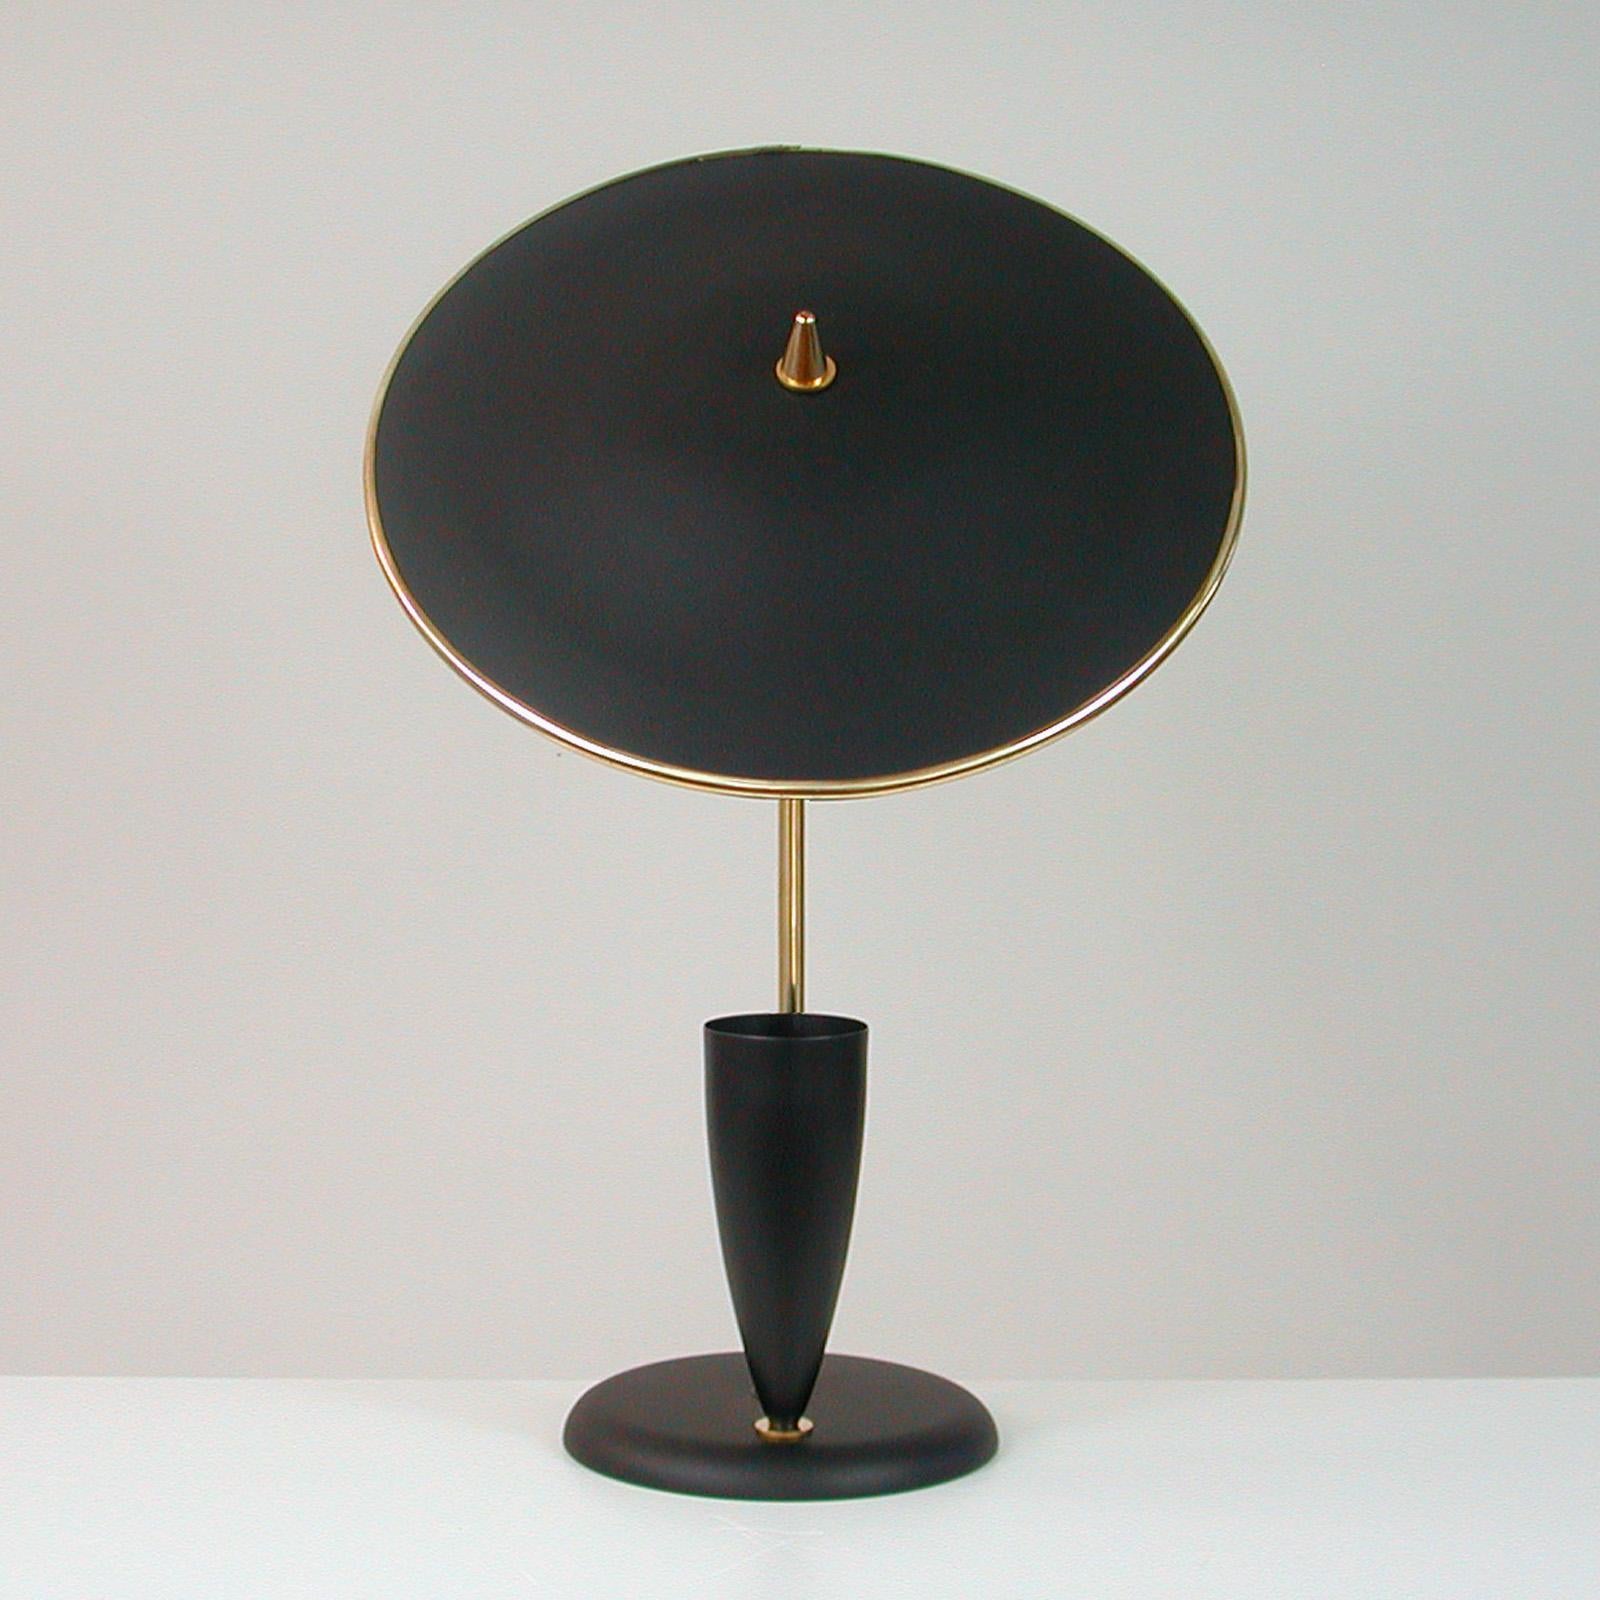 Diese elegante Tischleuchte im Stil von Maison Arlus wurde in den 1950er Jahren in Frankreich entworfen und hergestellt.

Sie verfügt über einen schwarzen, verstellbaren, reflektierenden Lampenschirm, einen Lampenarm aus Messing und eine schwarze